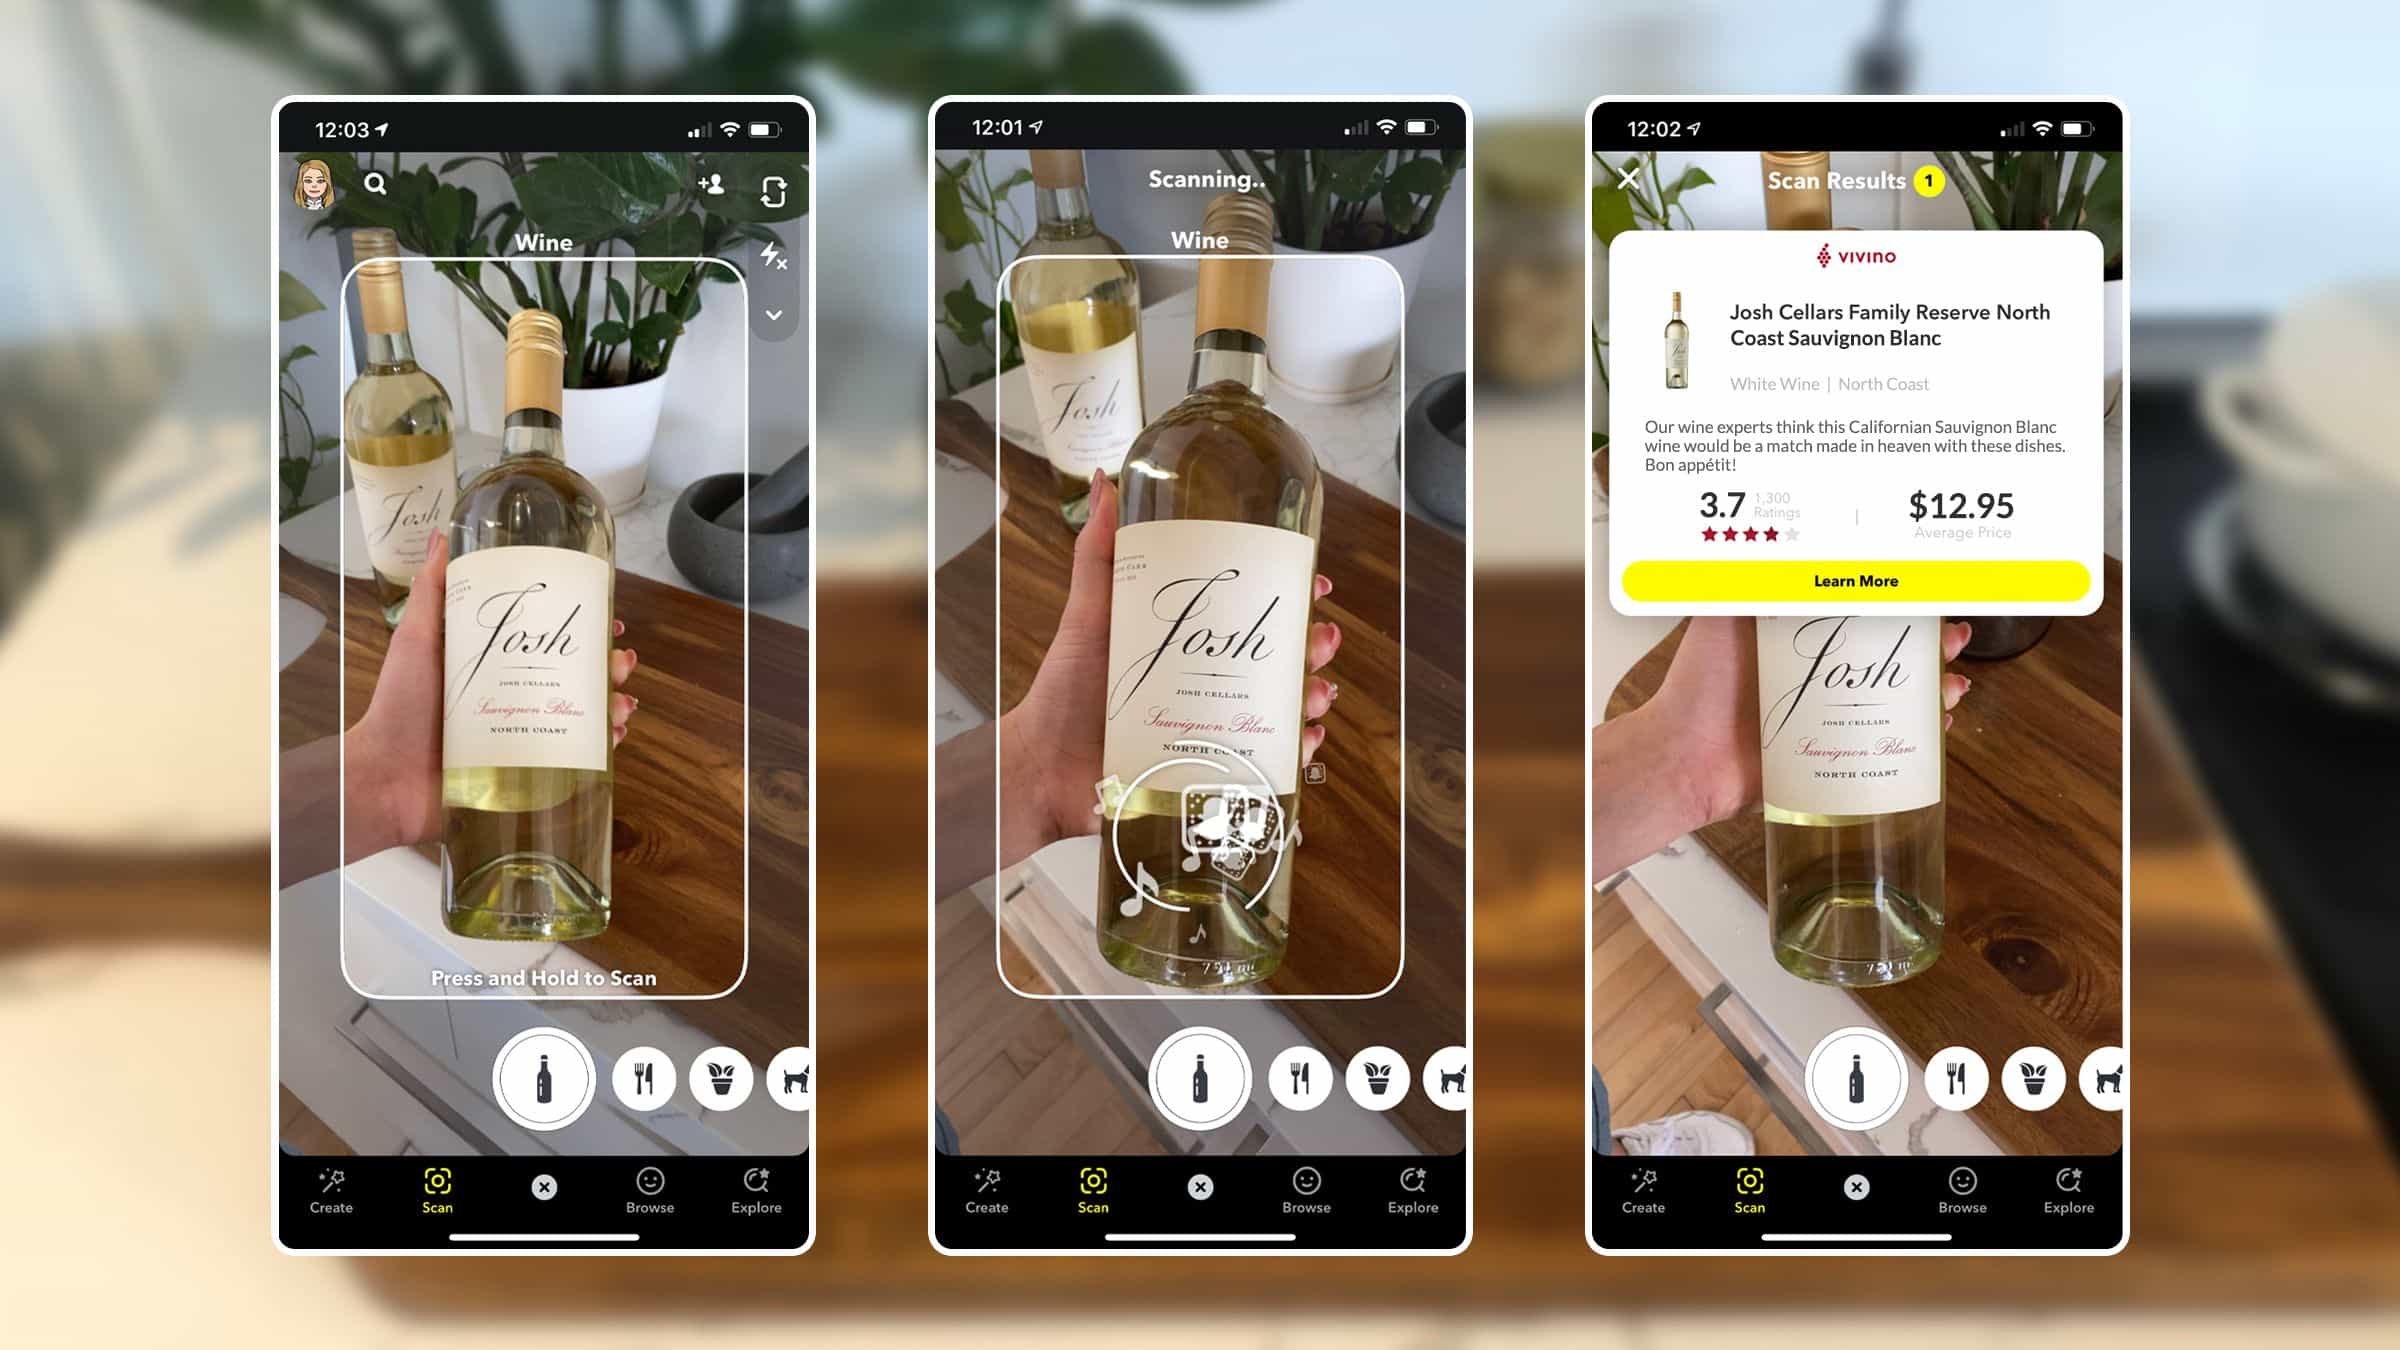 Une démonstration de la fonctionnalité pour scanner les bouteilles de vin sur Snapchat.